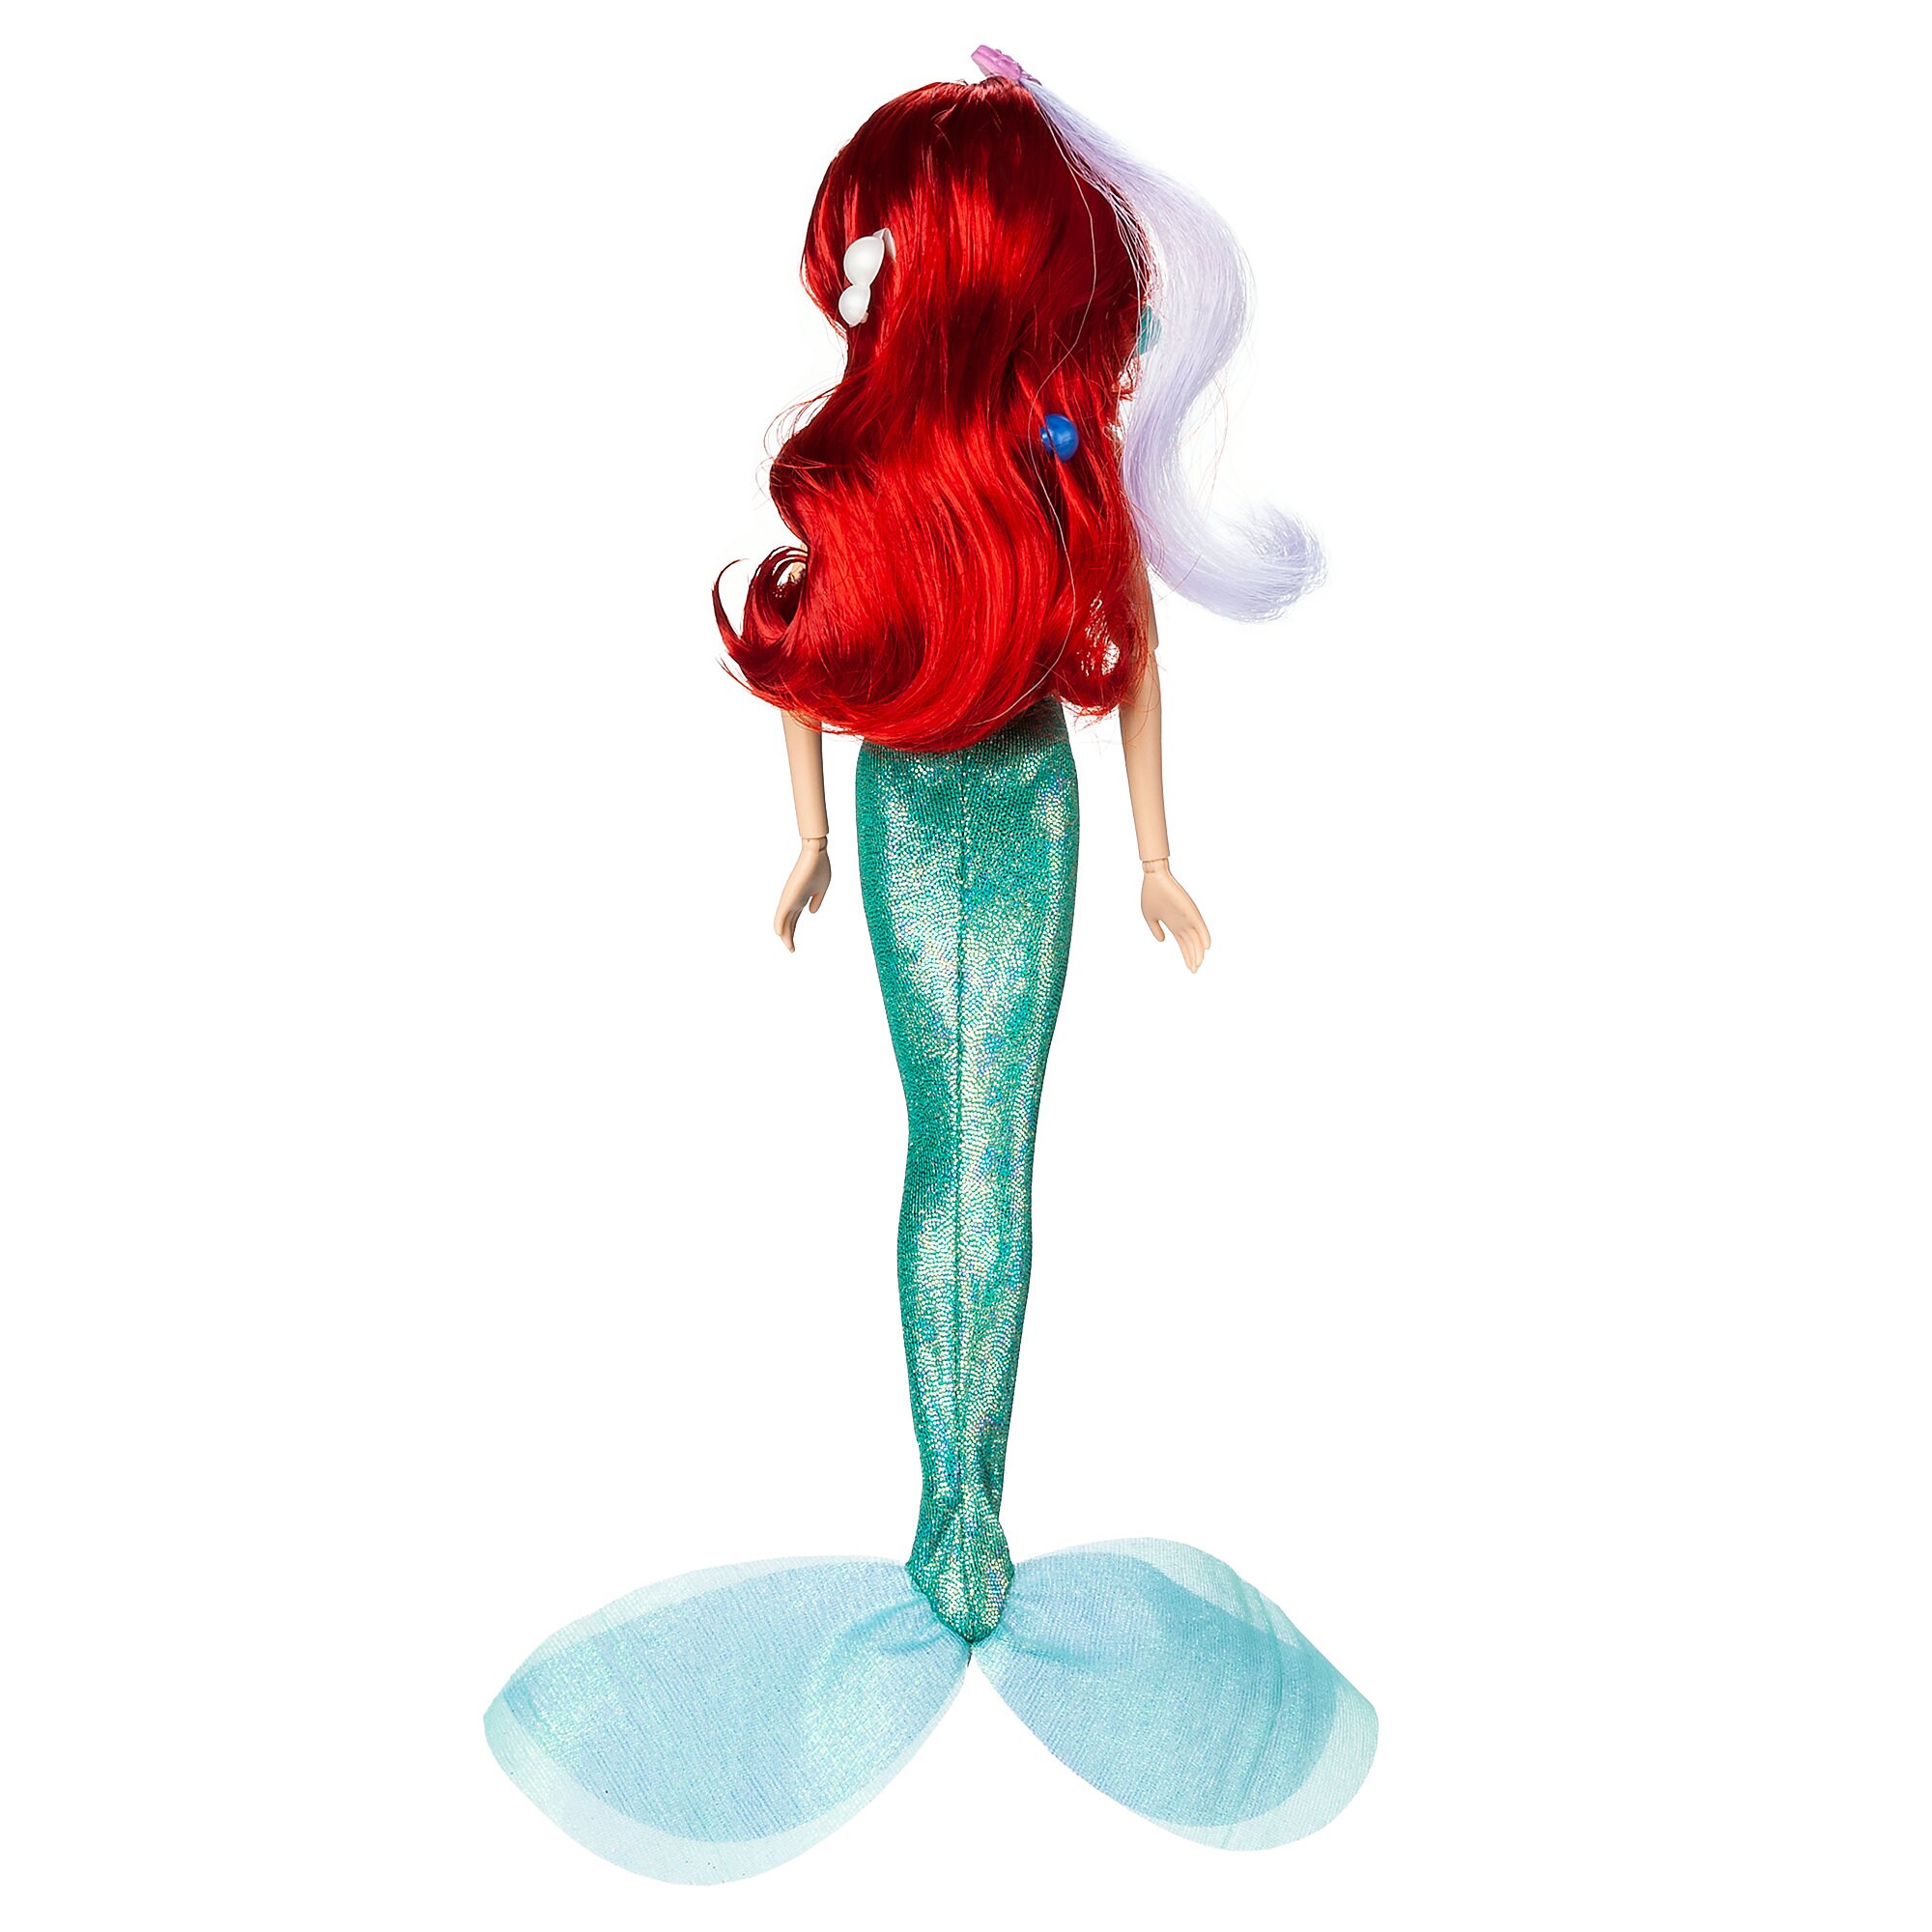 Ariel Hair Play Doll